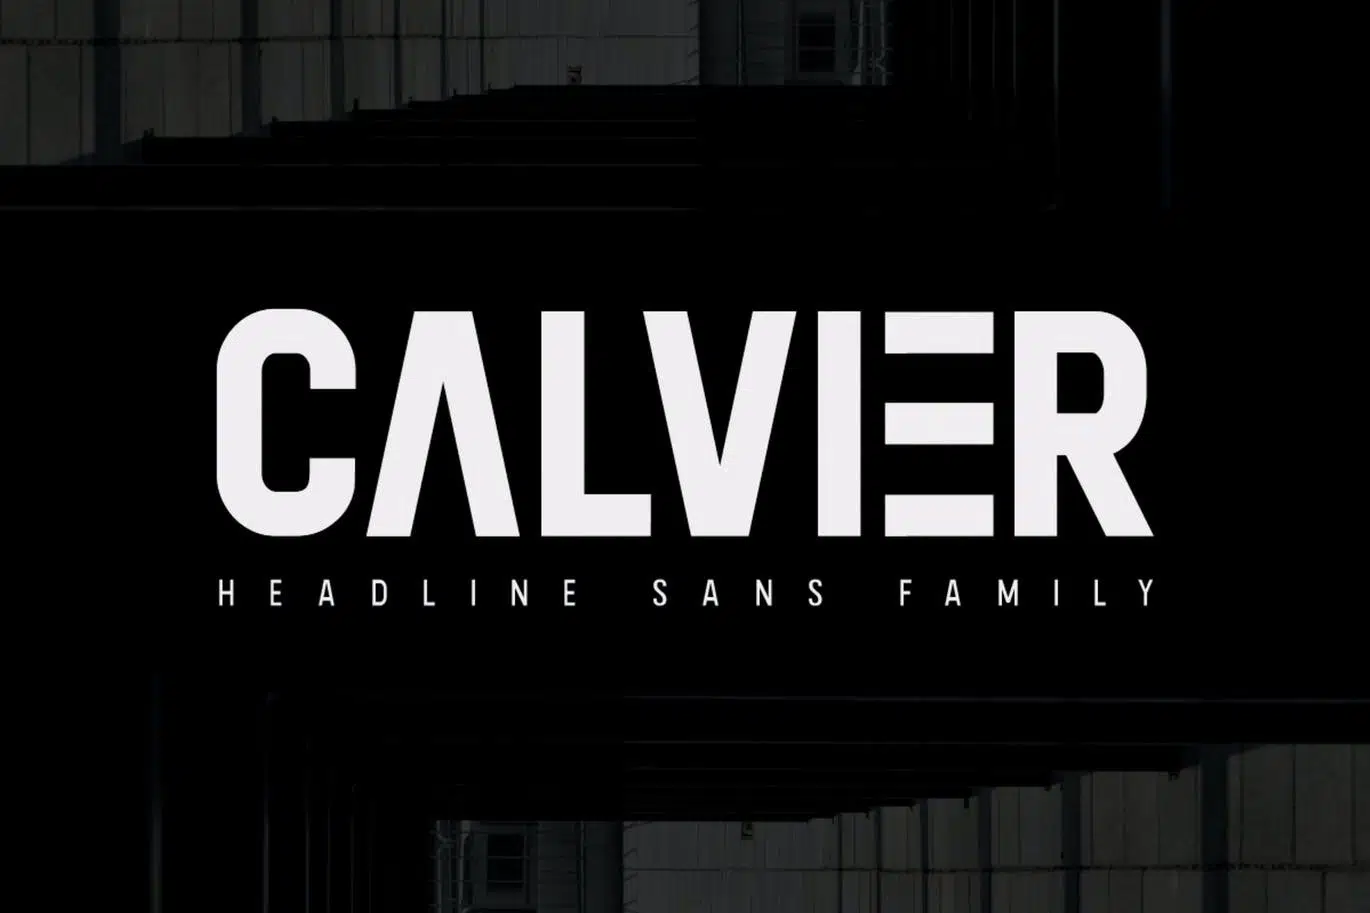 Calvier-Headline-Sans-Family.jpg.webp